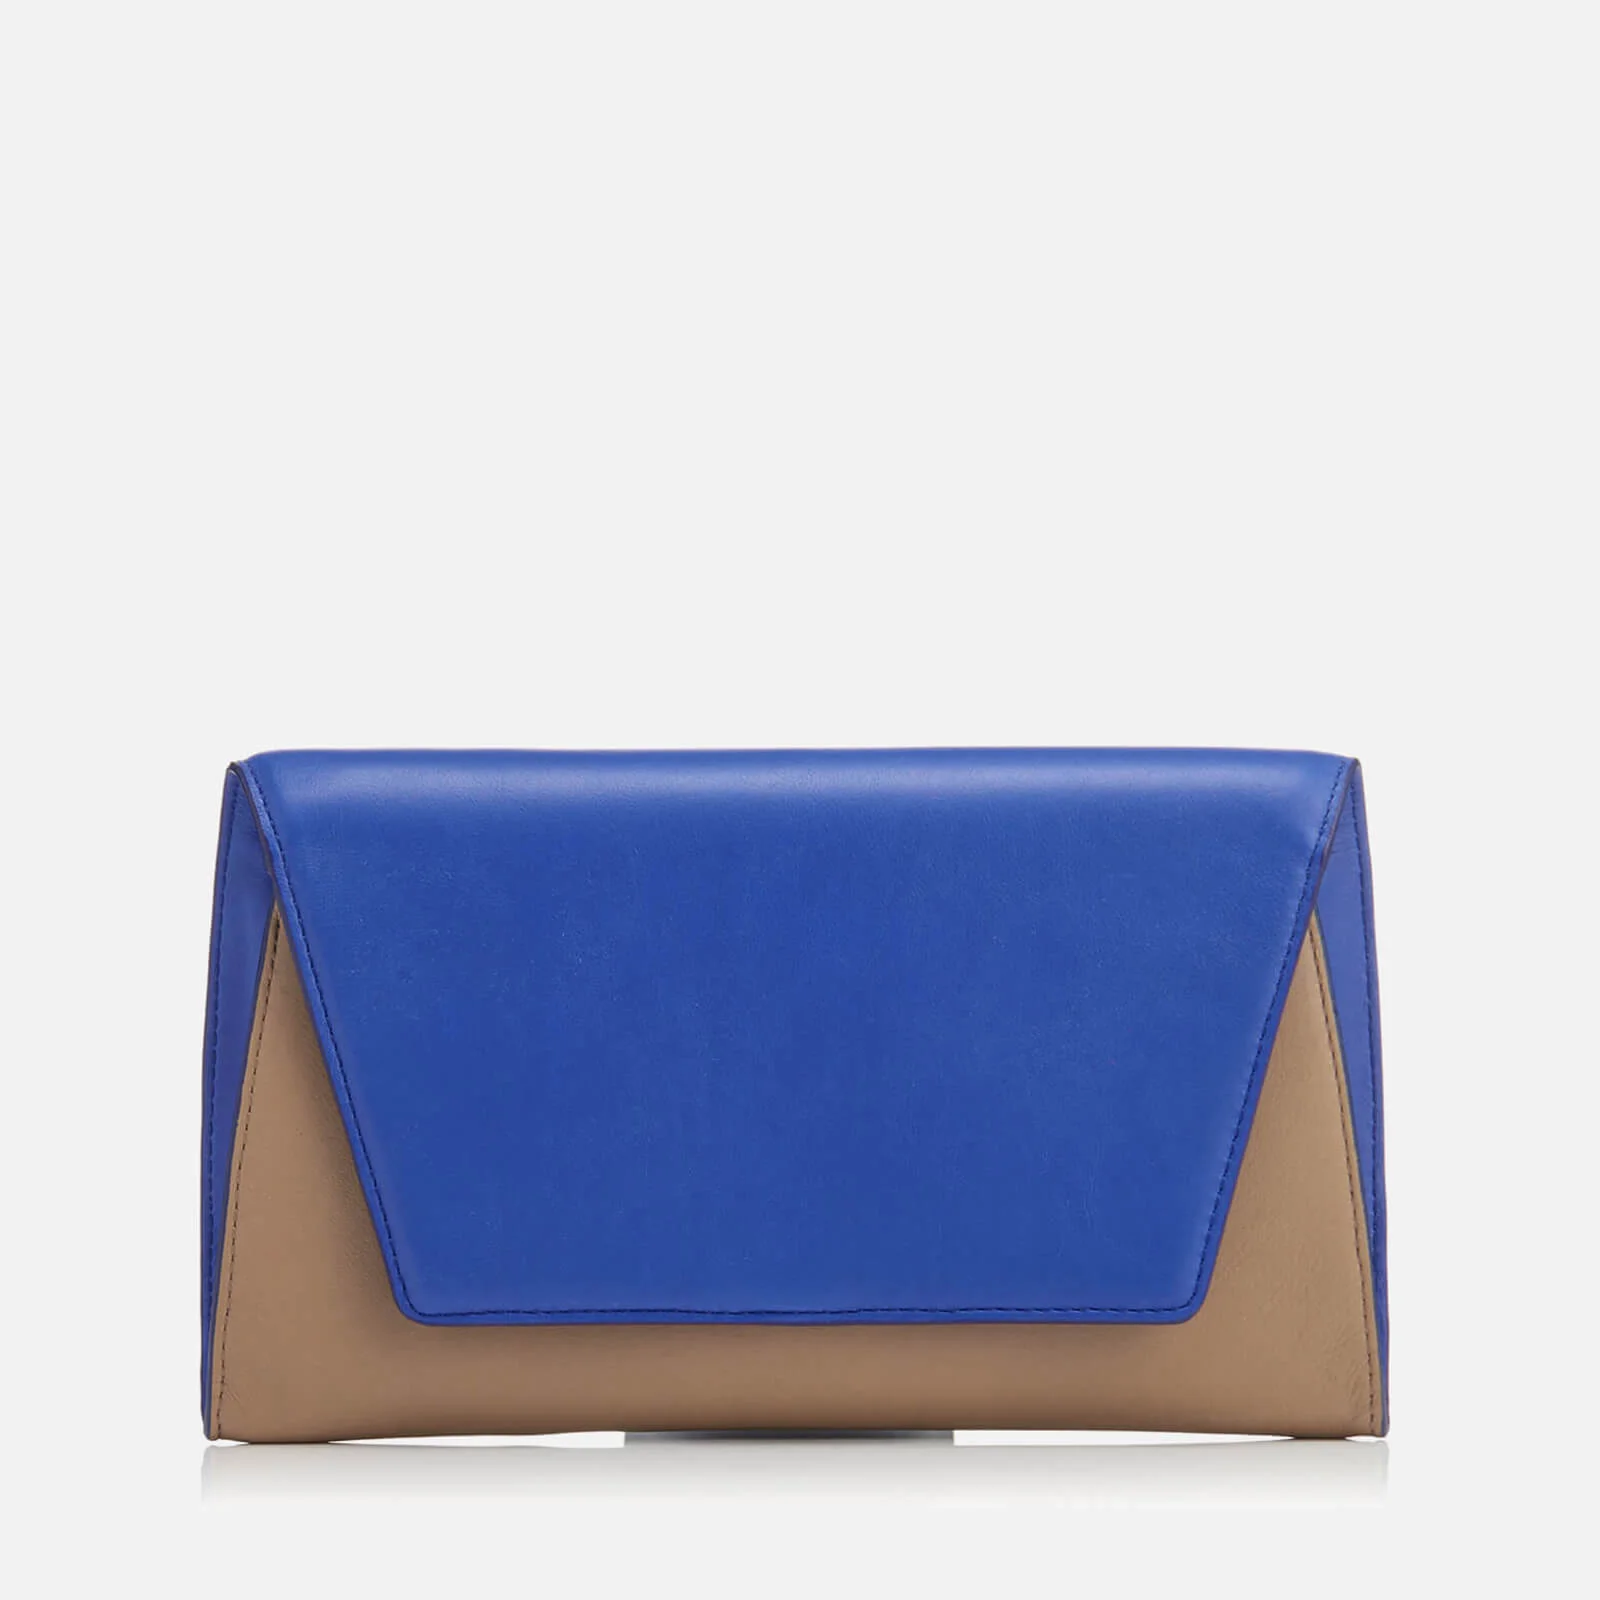 Diane von Furstenberg Women's Uptown Clutch Bag - Taupe Cobalt Image 1